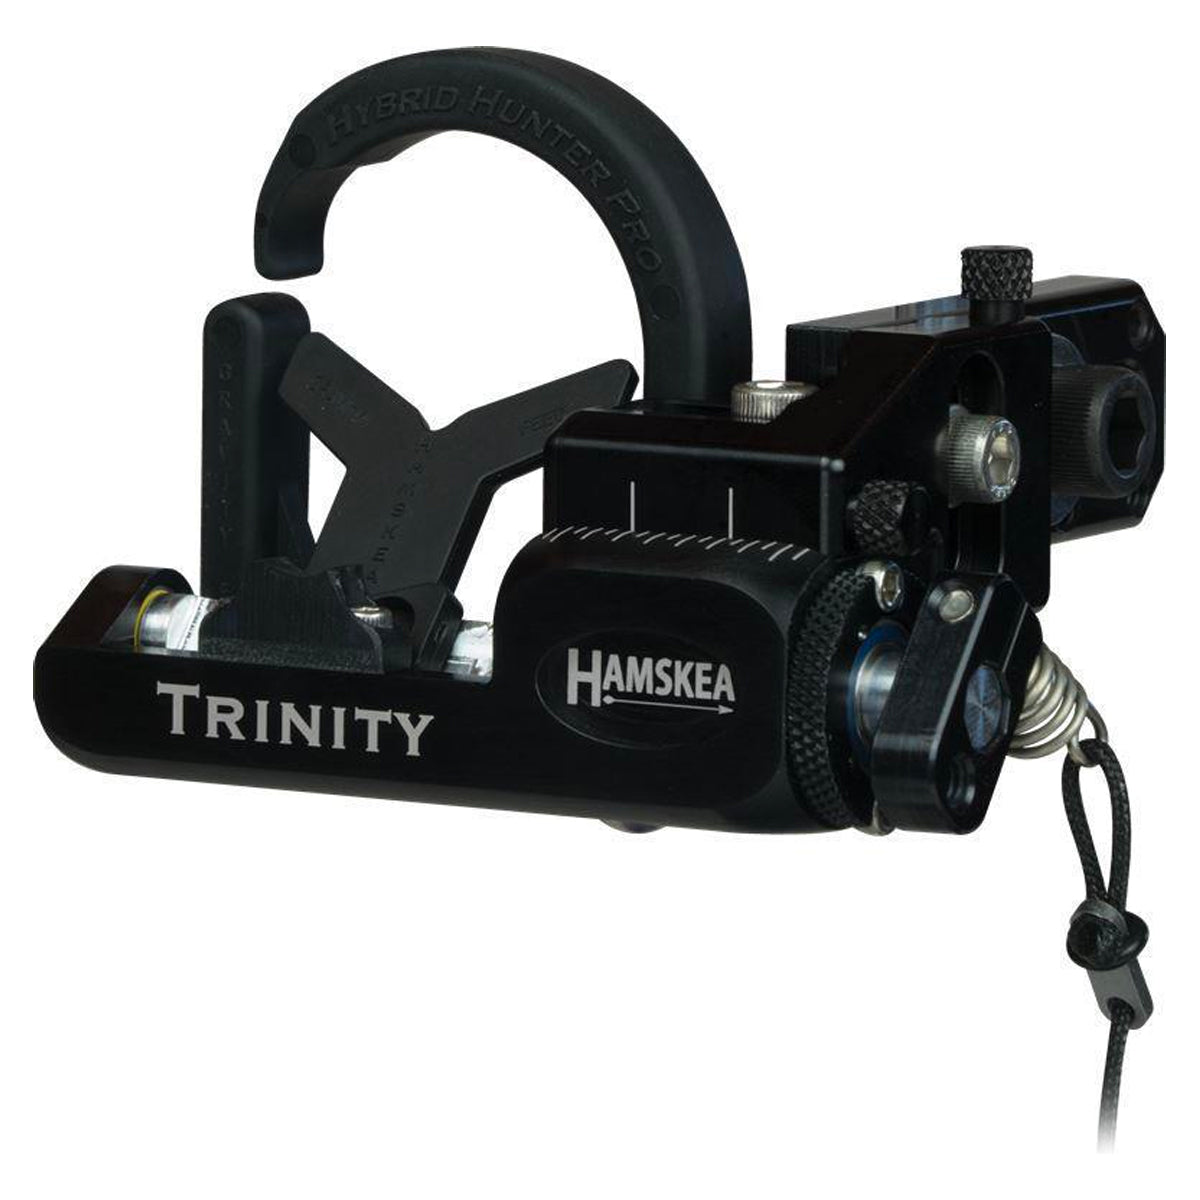 Hamskea Trinity Hunter Pro Arrow Rest by Hamskea | Archery - goHUNT Shop